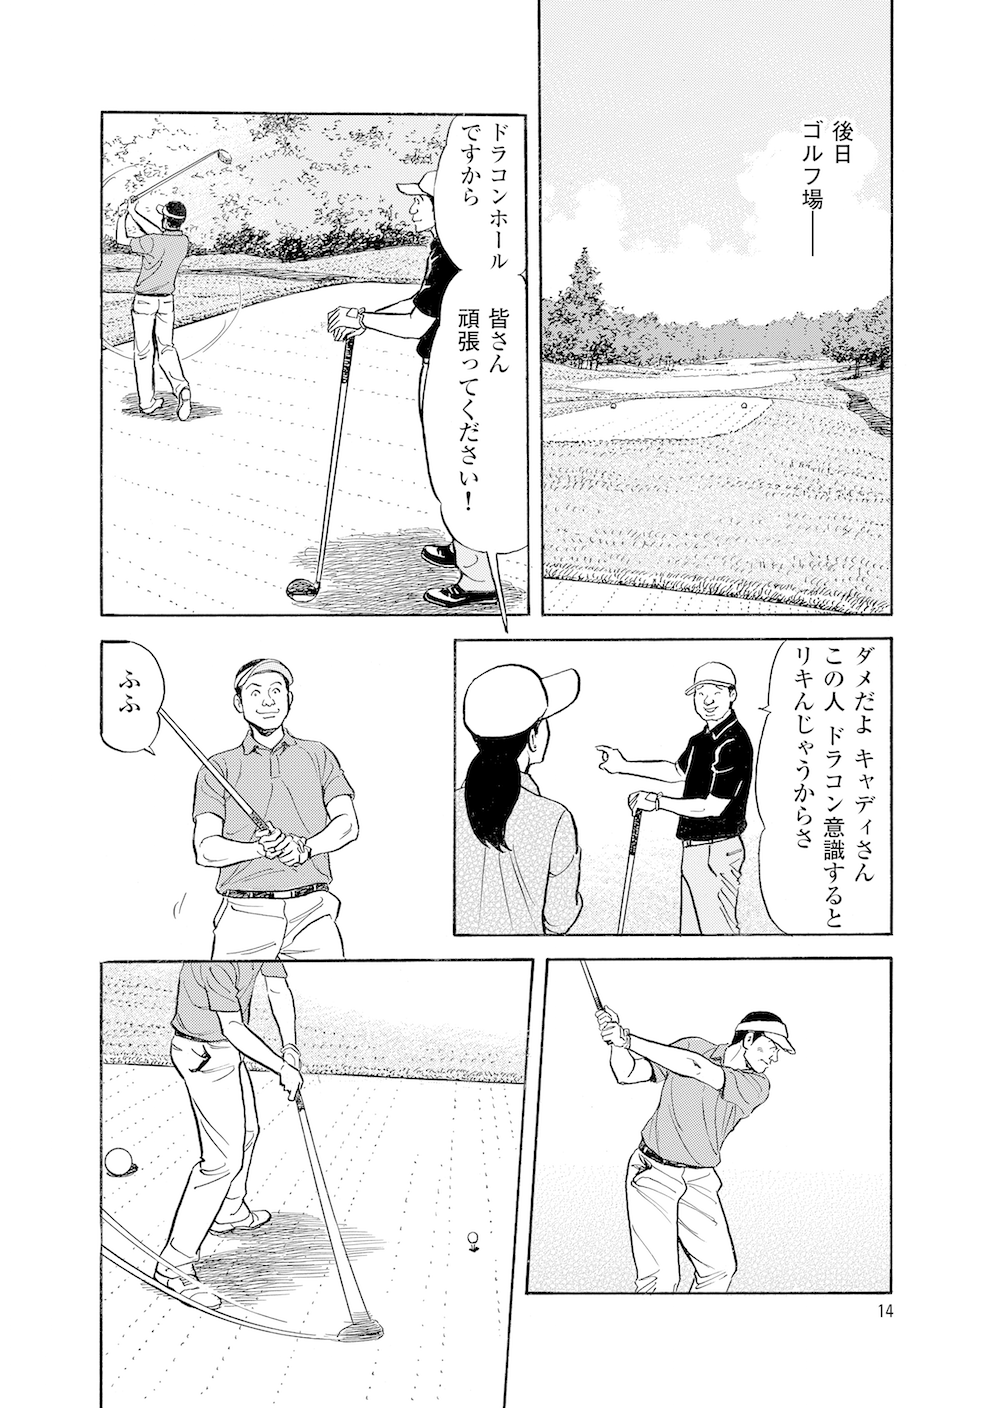 第4話 ドライバーを使いこなせ 無料で読めるゴルフレッスンコミックweb 日本文芸社